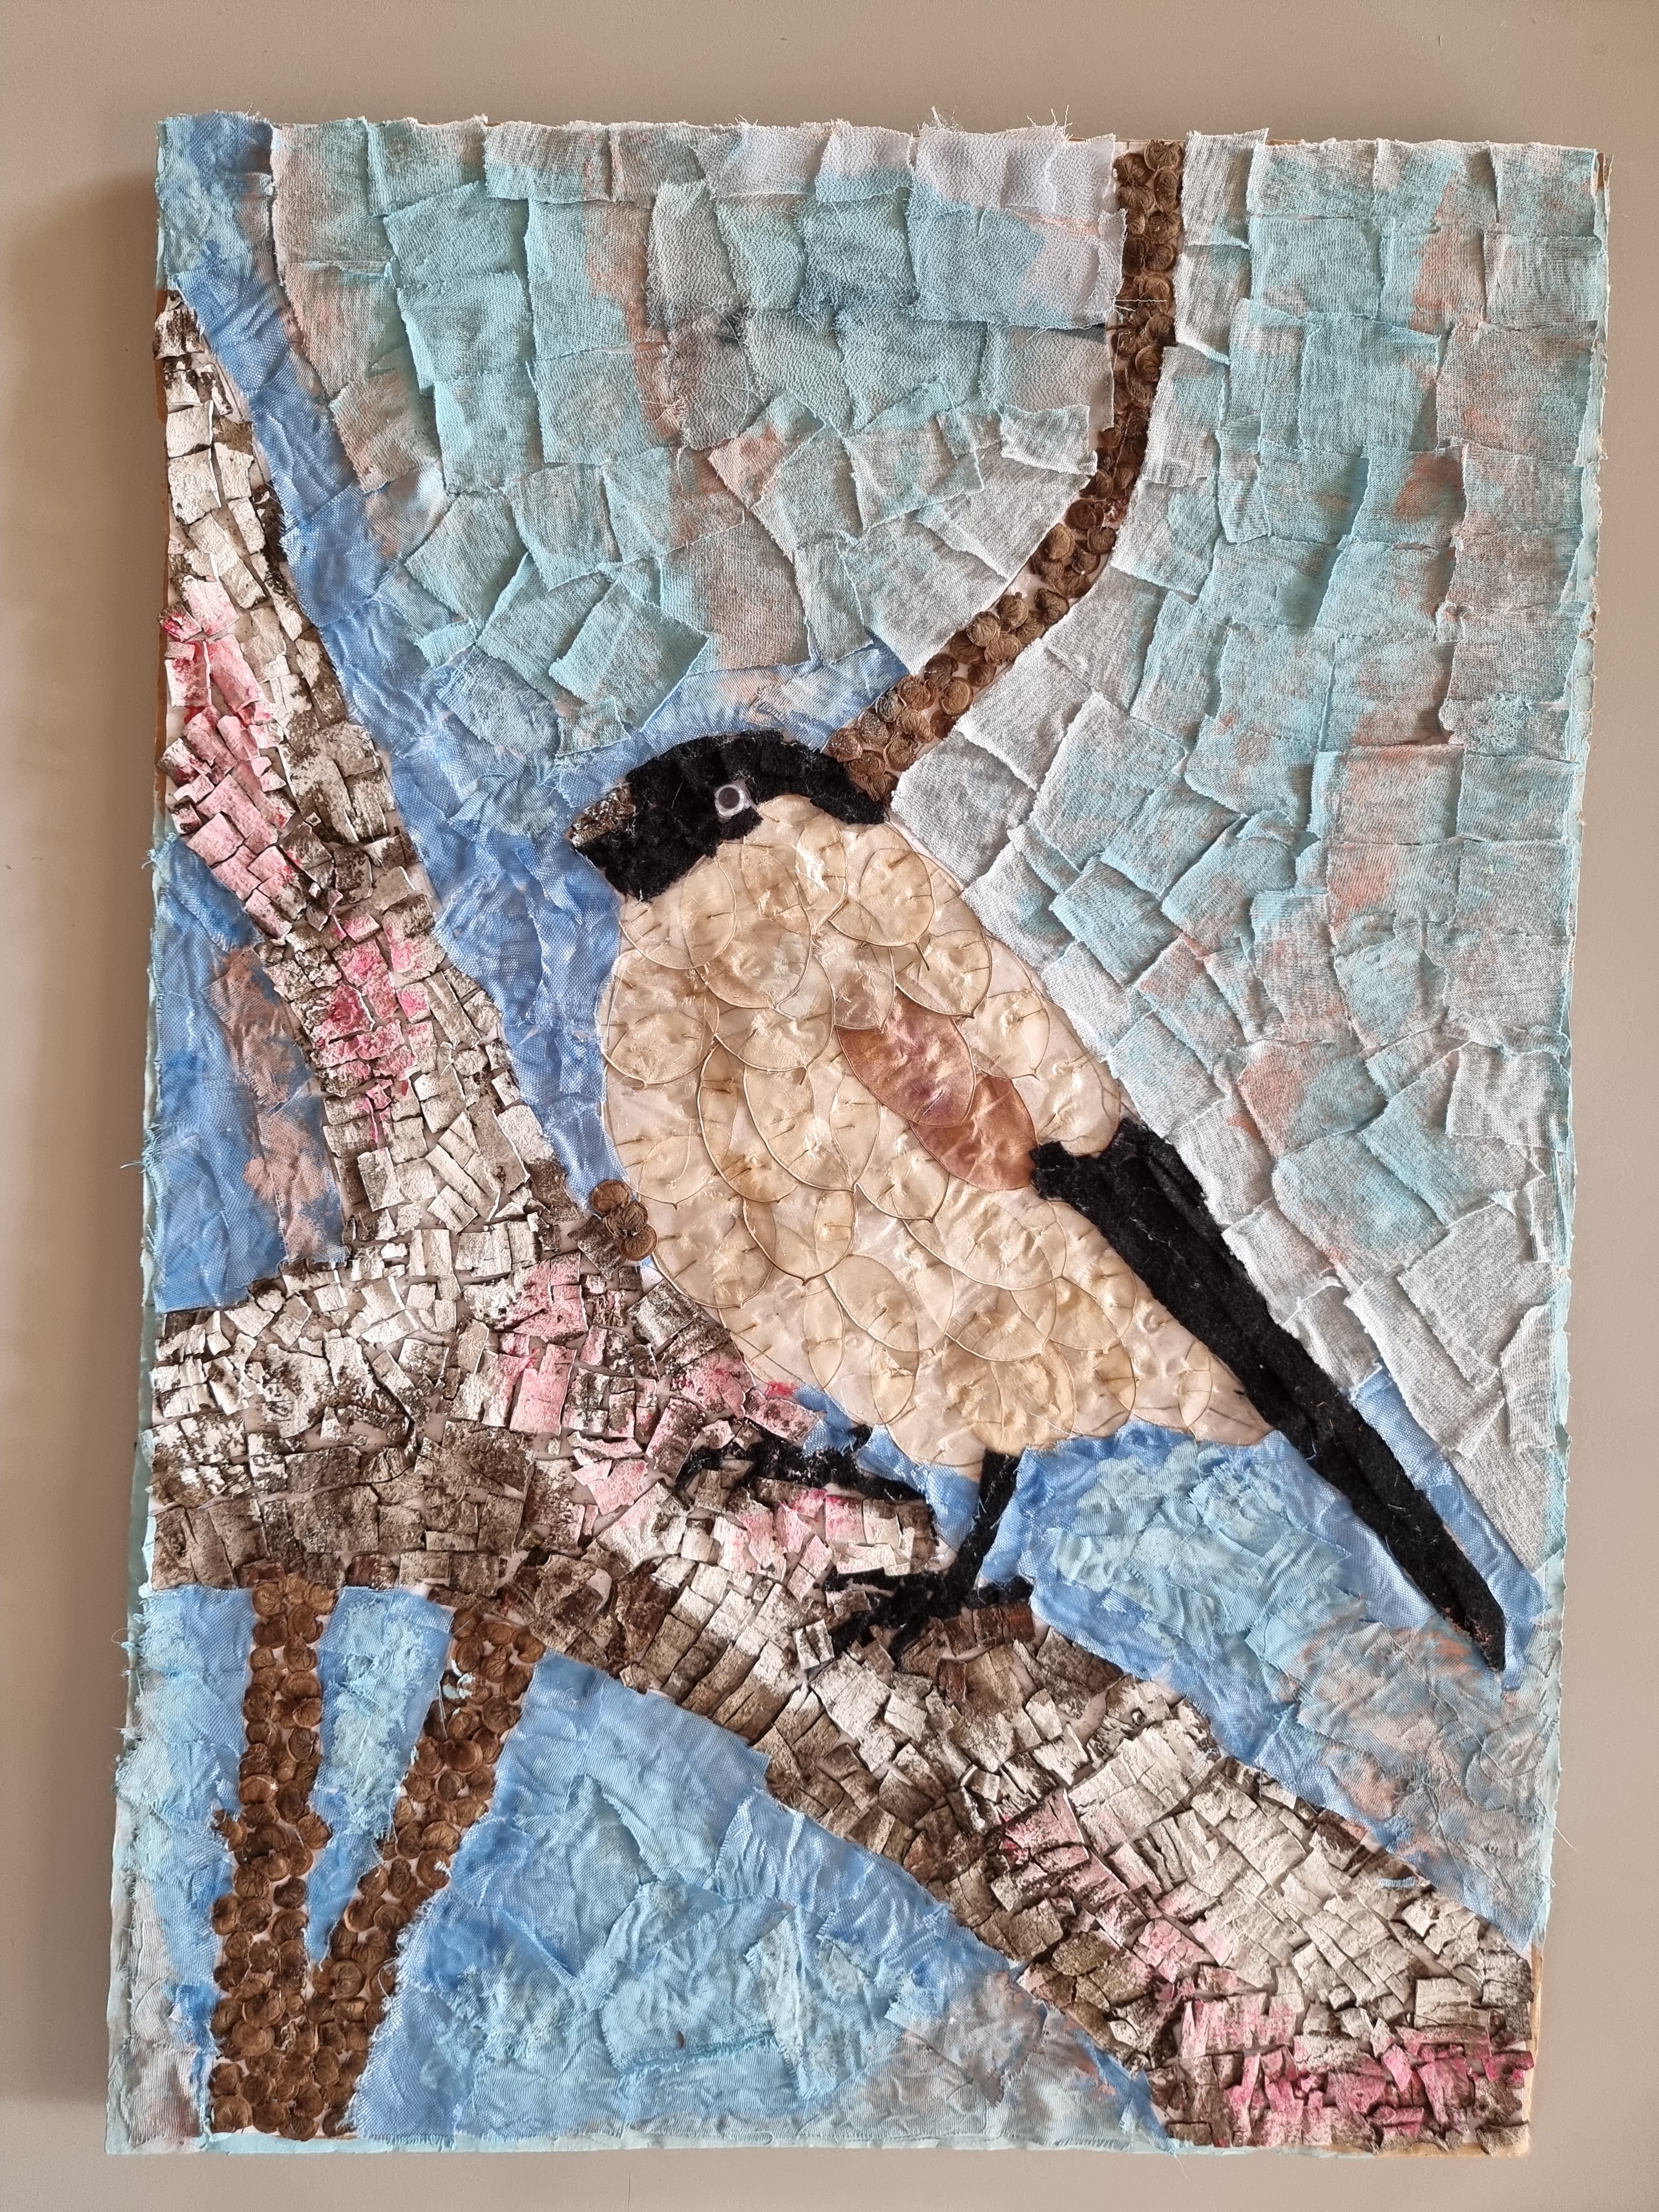 Trabalho finalizado da collage do pássaro priolo de S. Miguel Açores